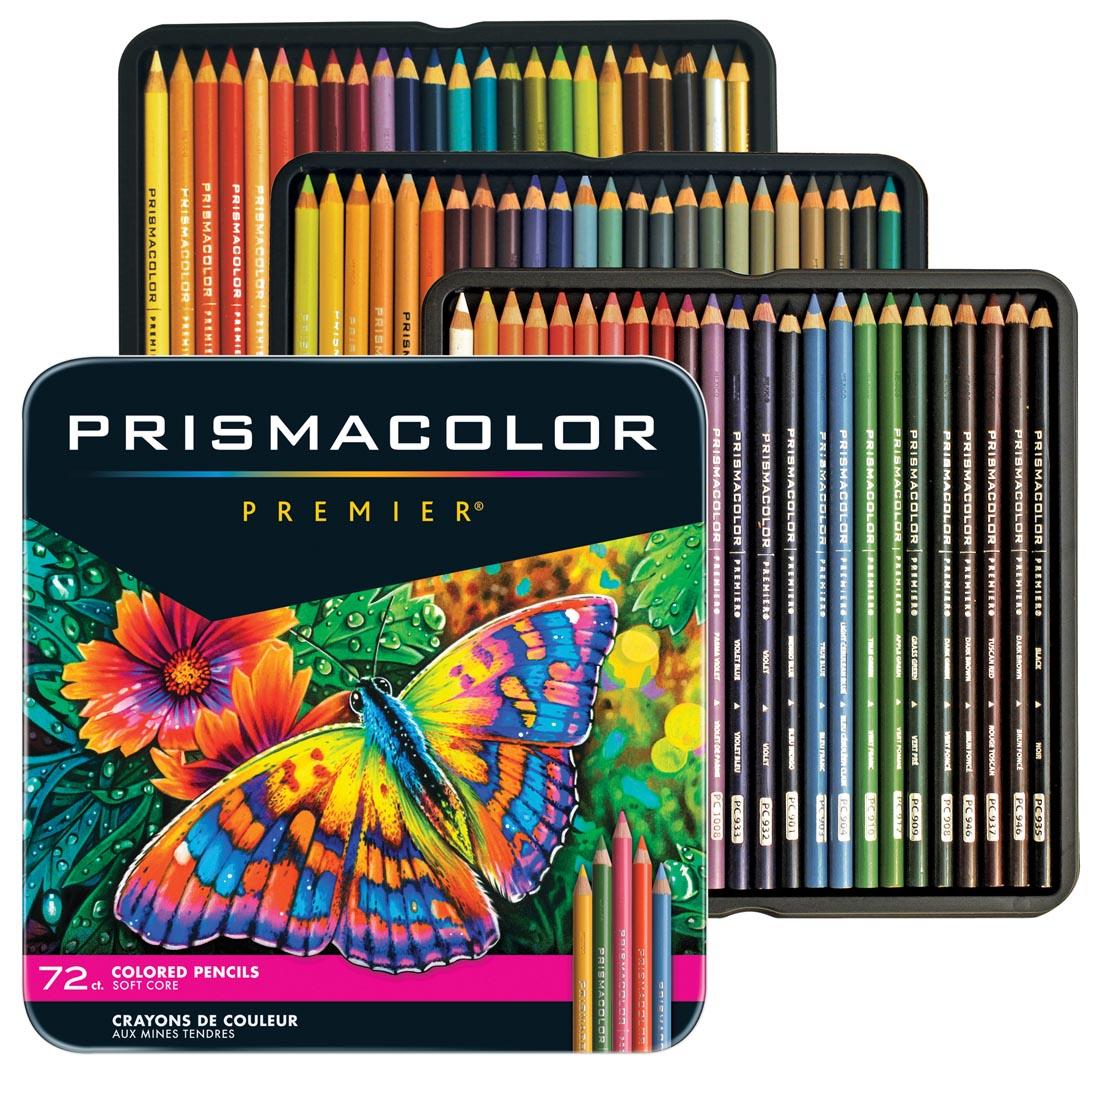 Prismacolor] Premier Soft Core Pencil Set of 150 Assorted Colors